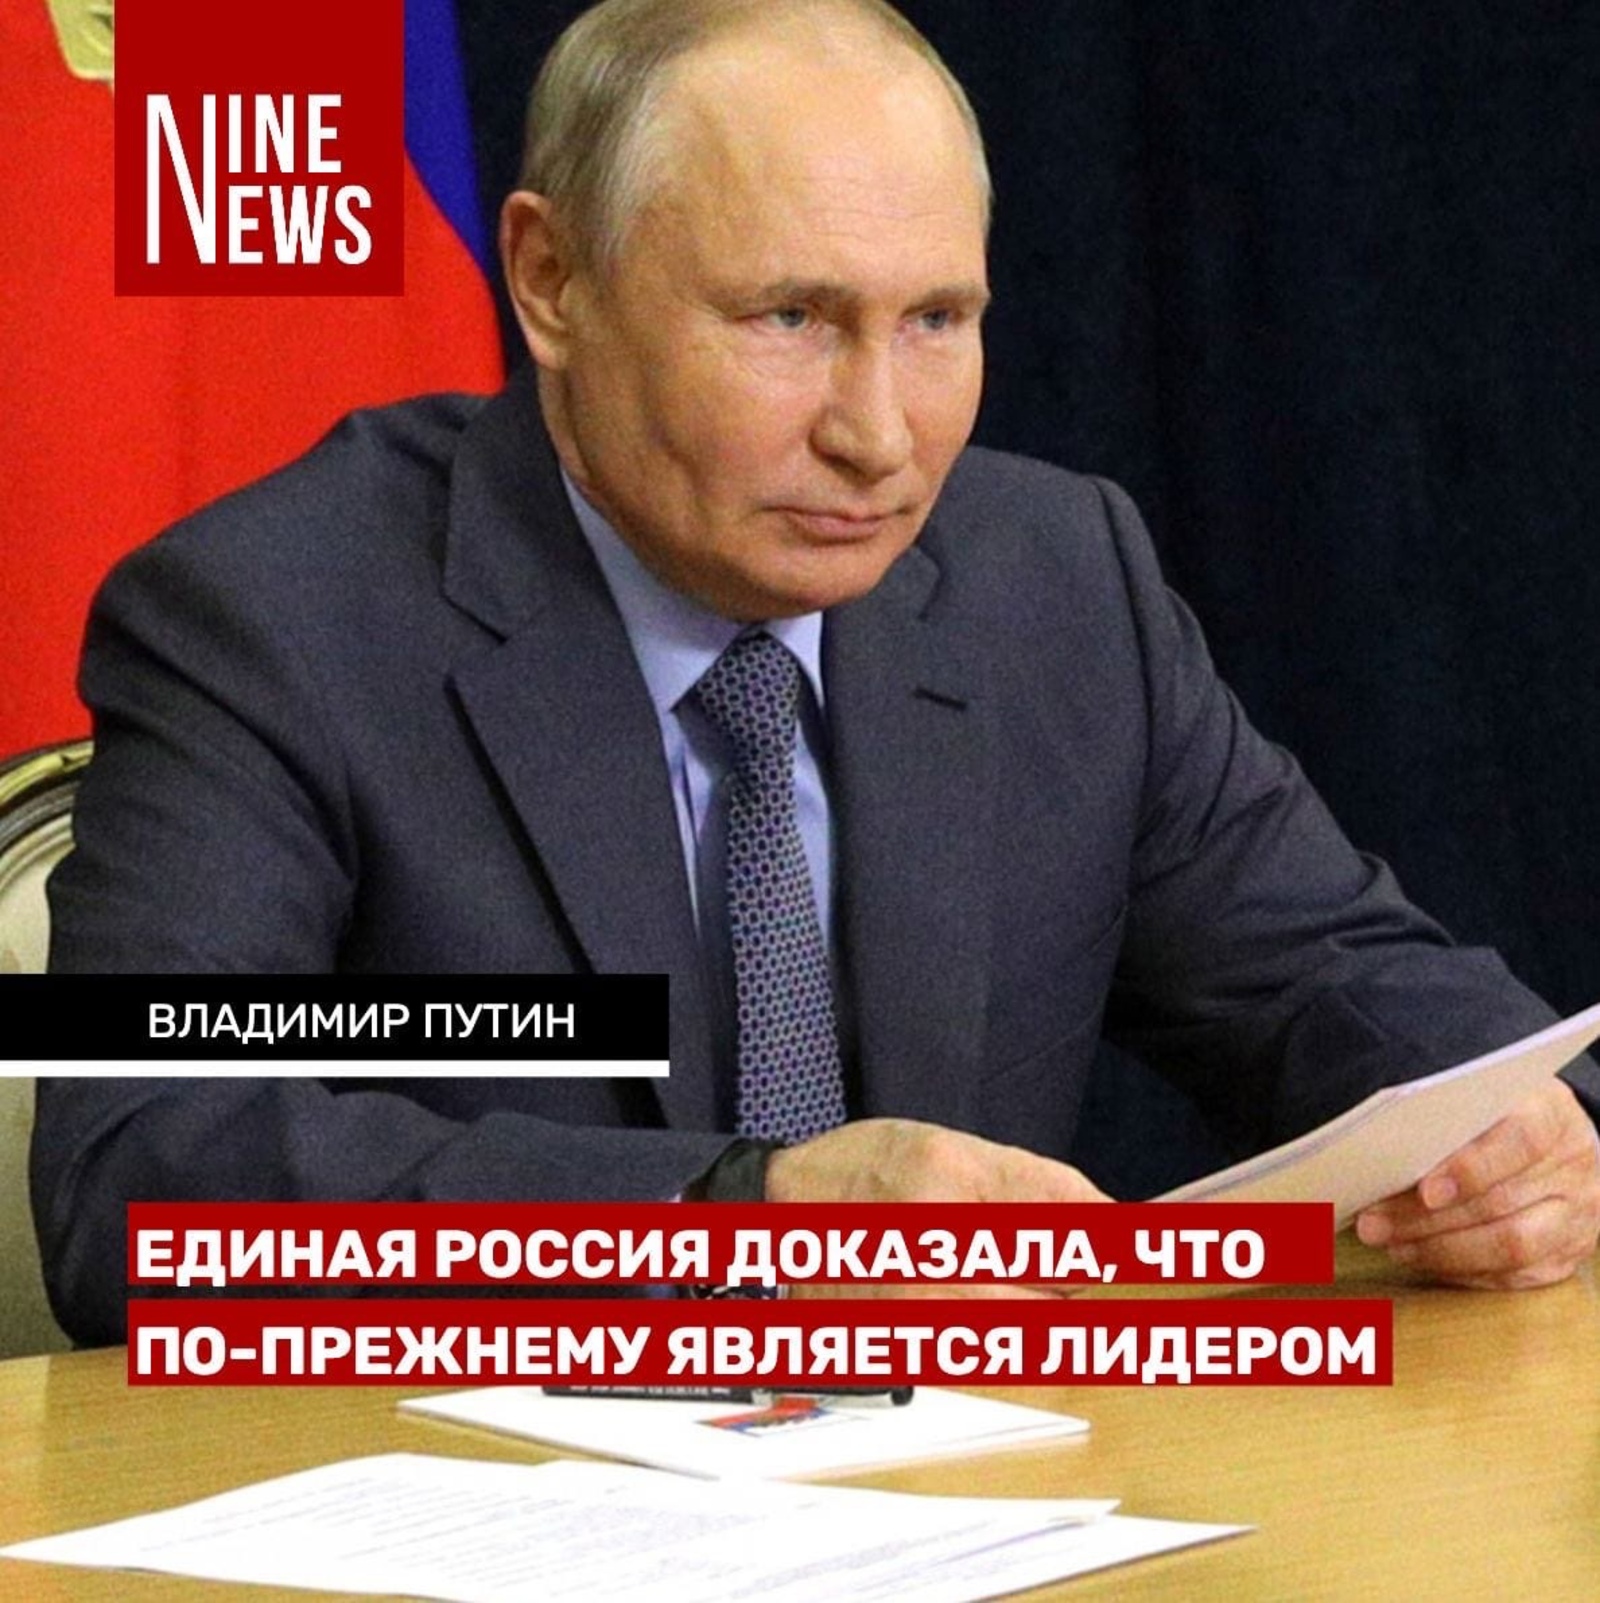 Владимир Путин поздравил Единую Россию с убедительной победой на выборах в Госдуму